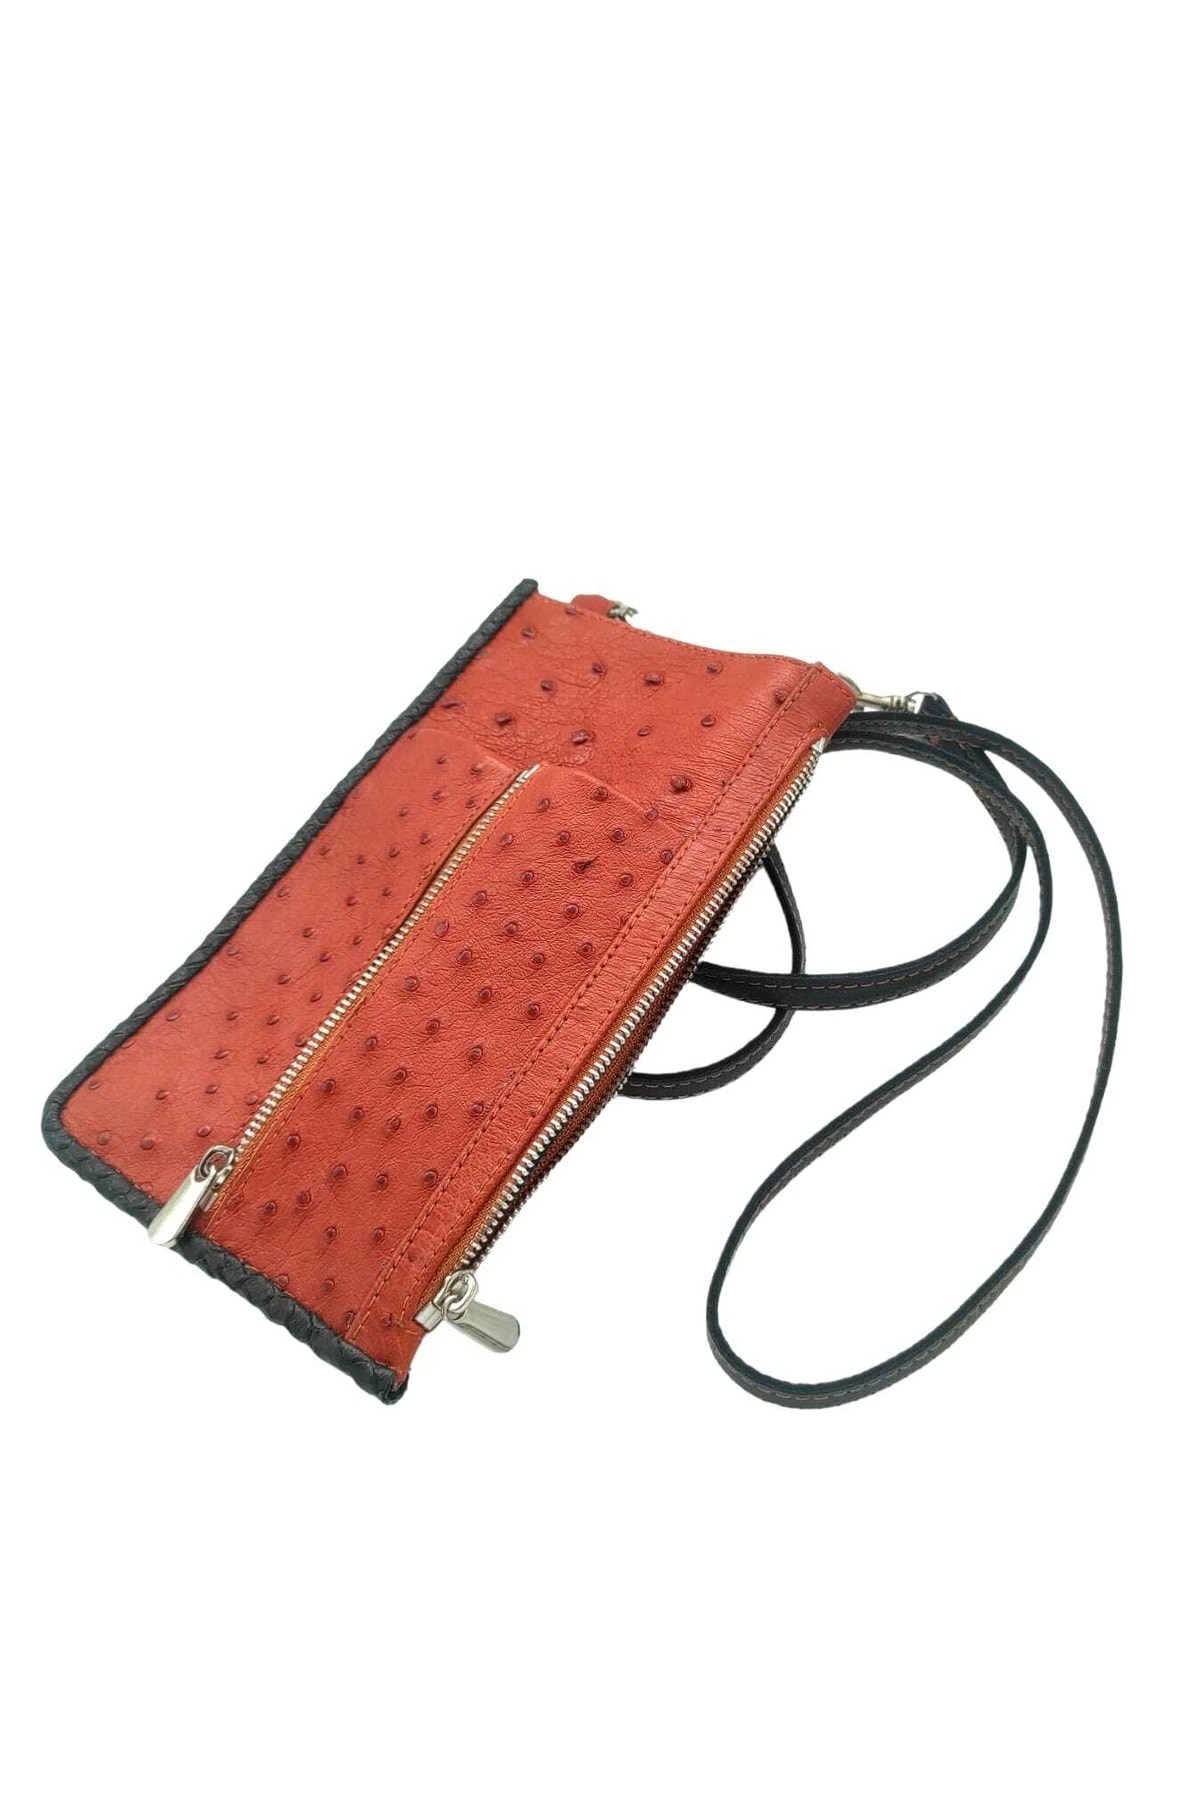 muub leather Özel Tasarım Hakiki Devekuşu Derisi Omuz Cüzdan Çantası UX9516